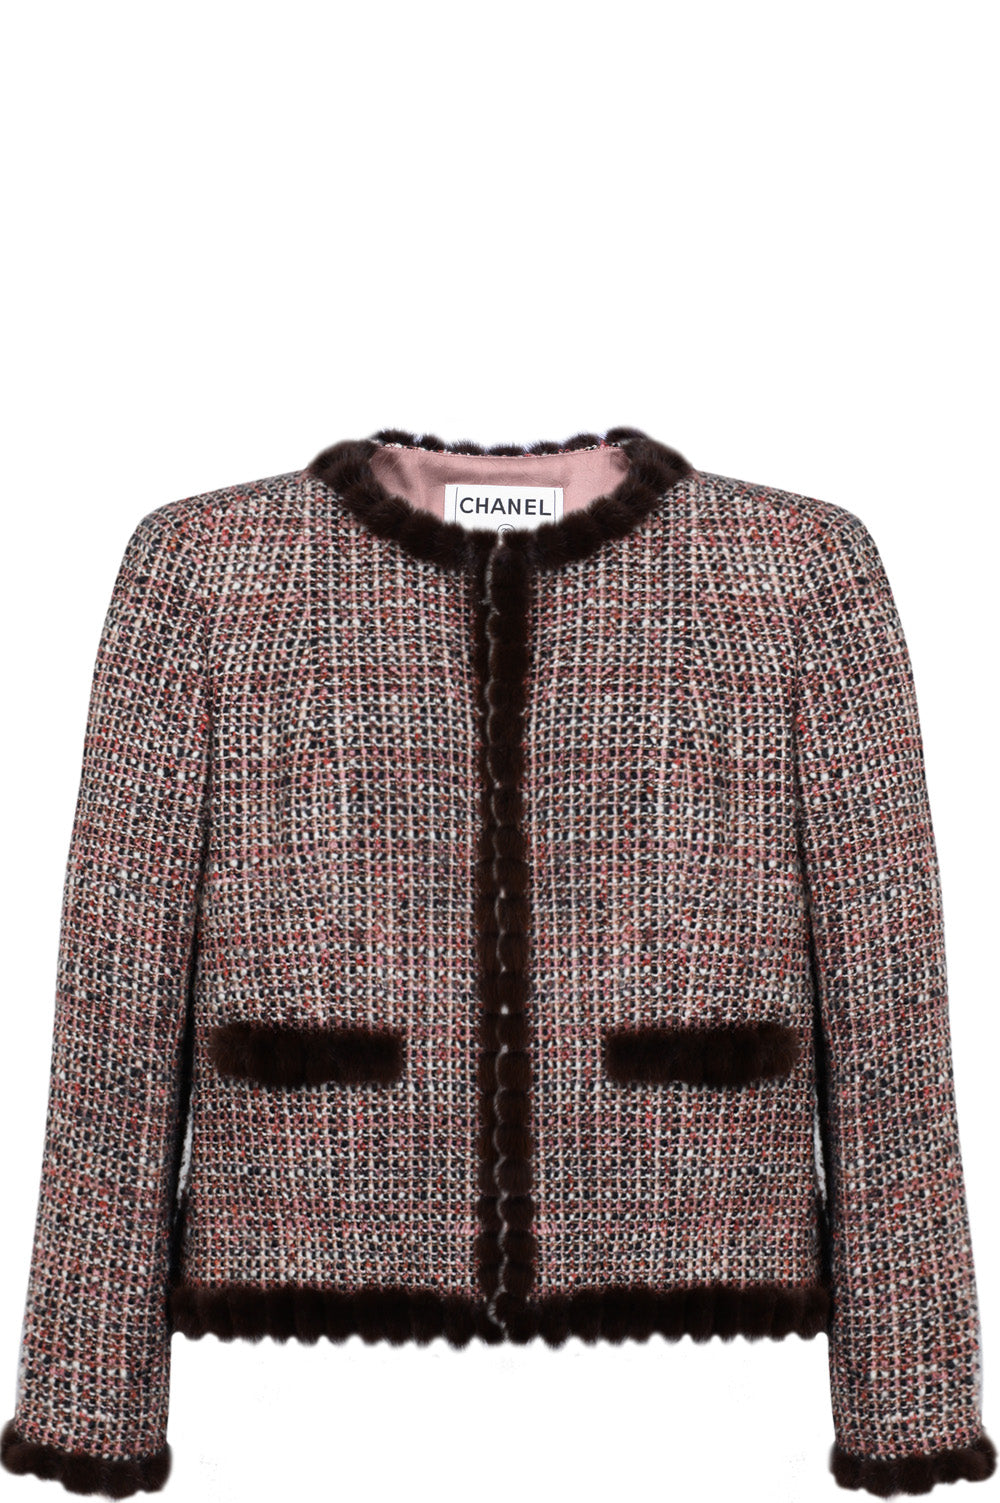 CHANEL  2003 Jacket Tweed and Fur